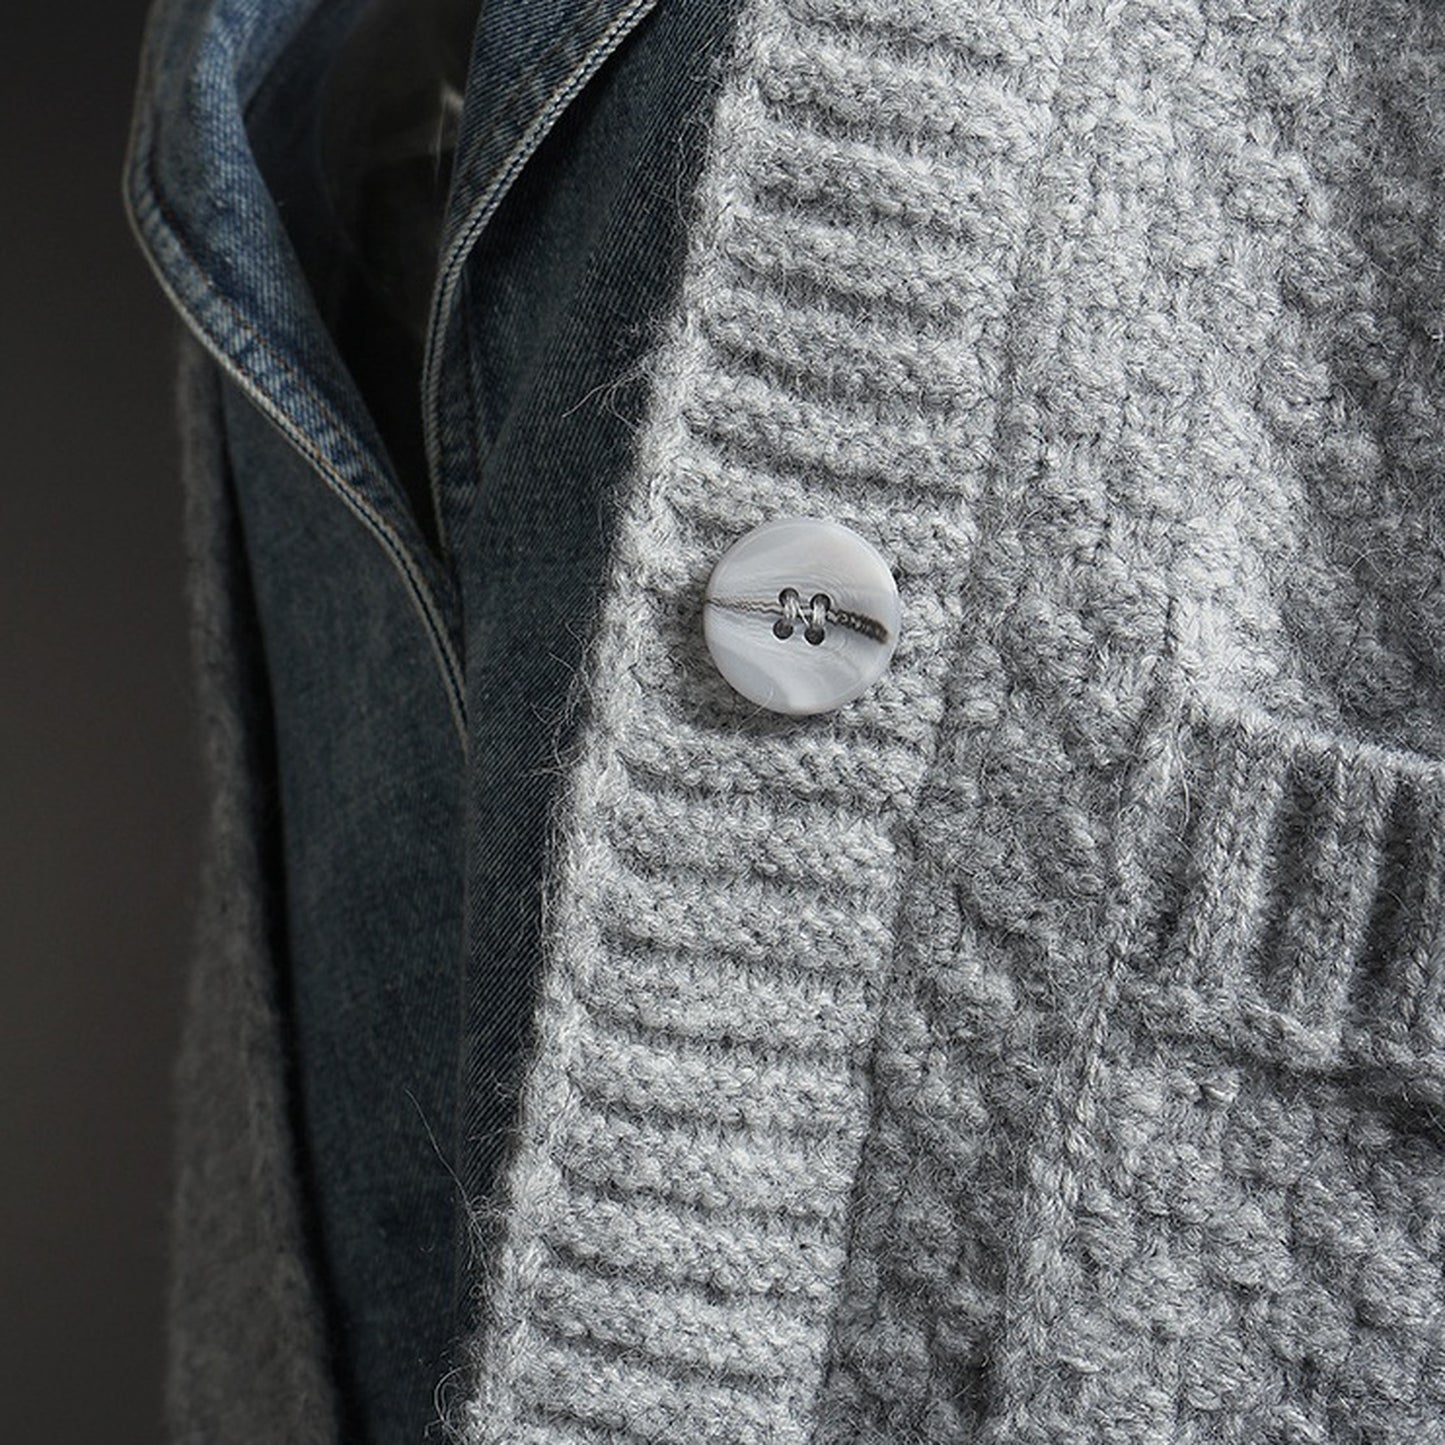 Sweater denim docking jacket X057 